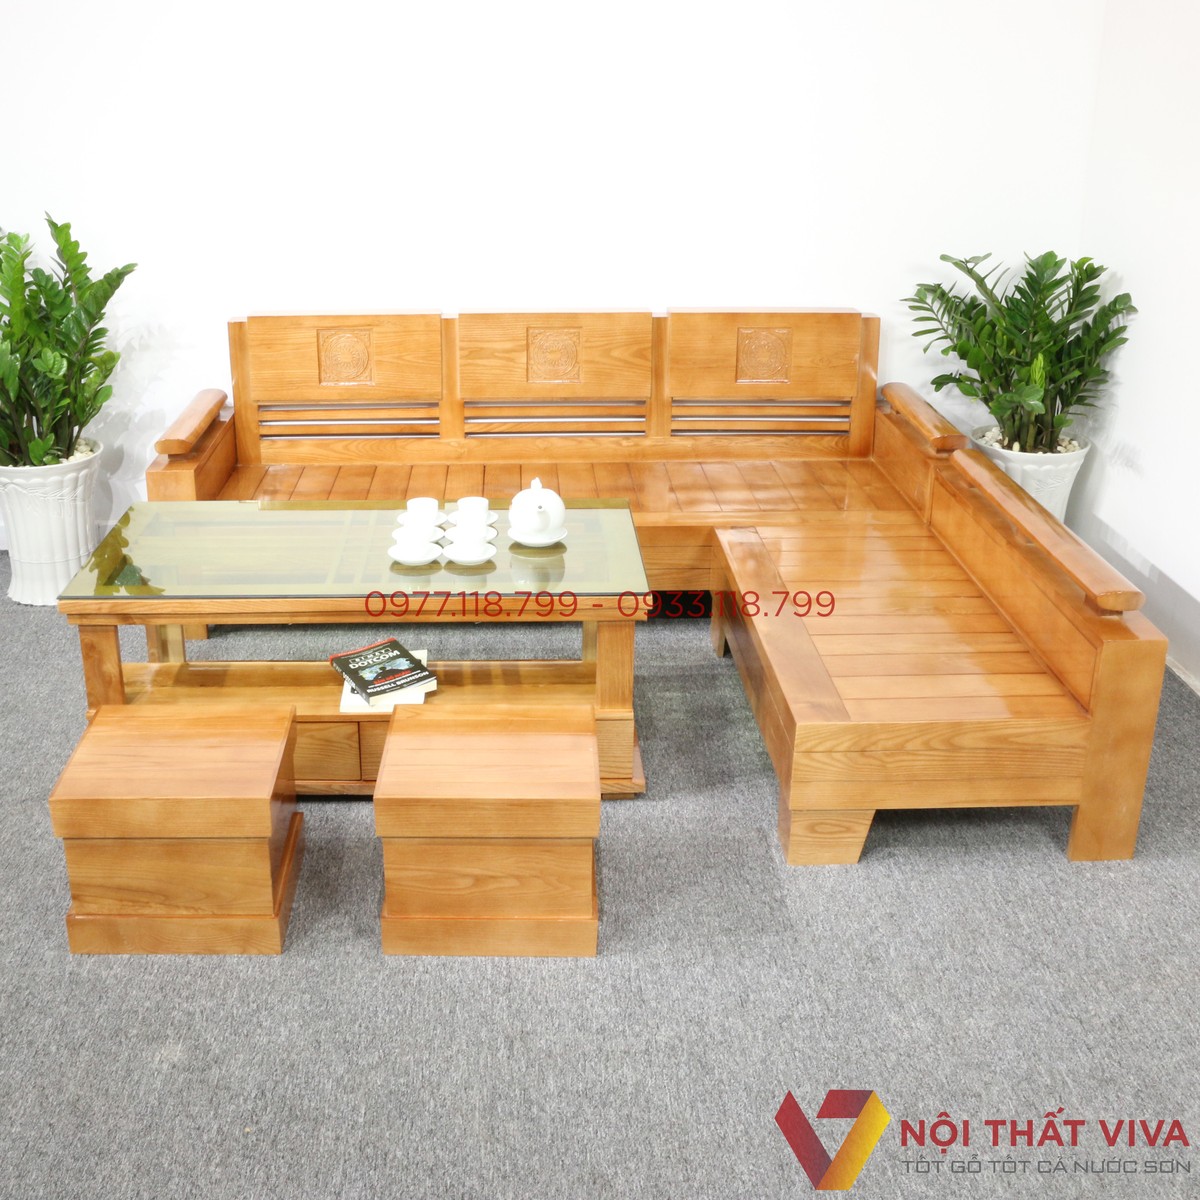 Chọn mua bàn ghế gỗ cho phòng khách 20m2 sao cho chuẩn đẹp tiết kiệm?